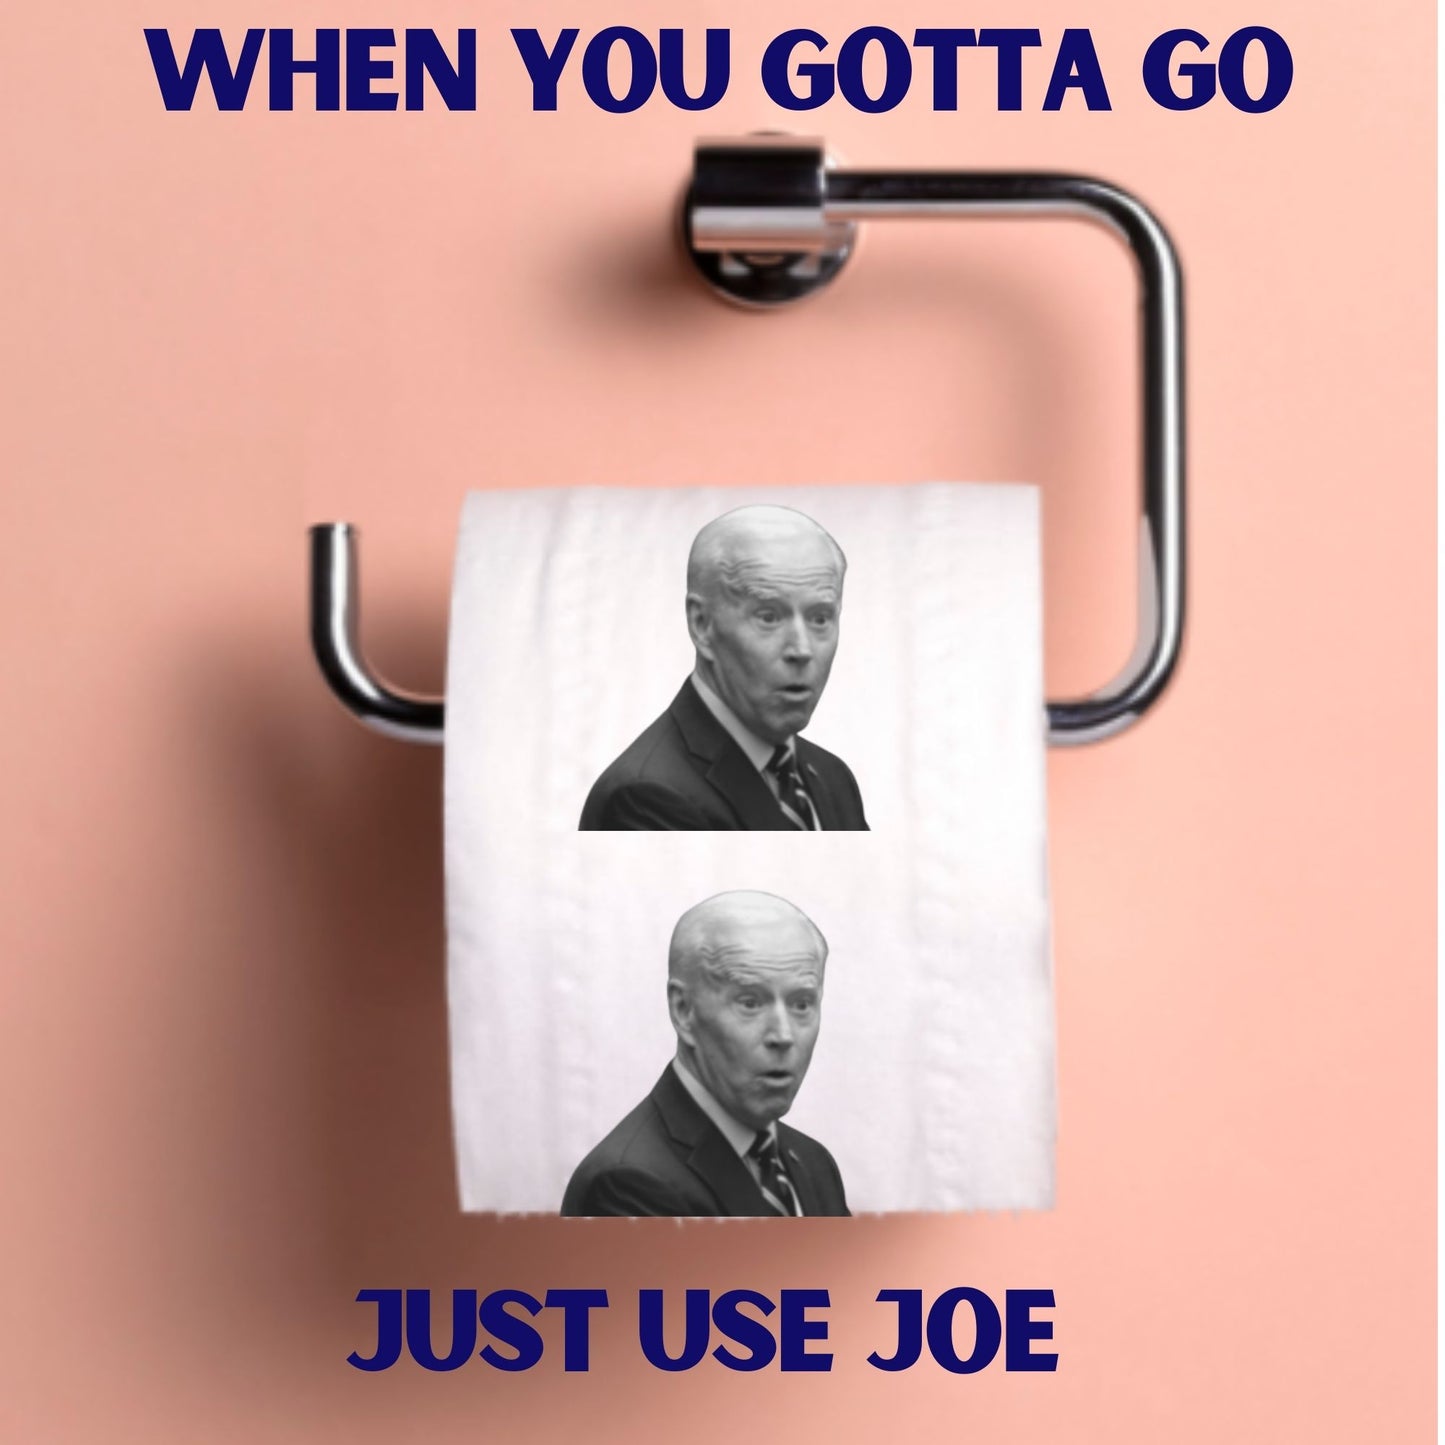 Sleepy Joe Biden Toilet Paper Rolls | 2-Pack